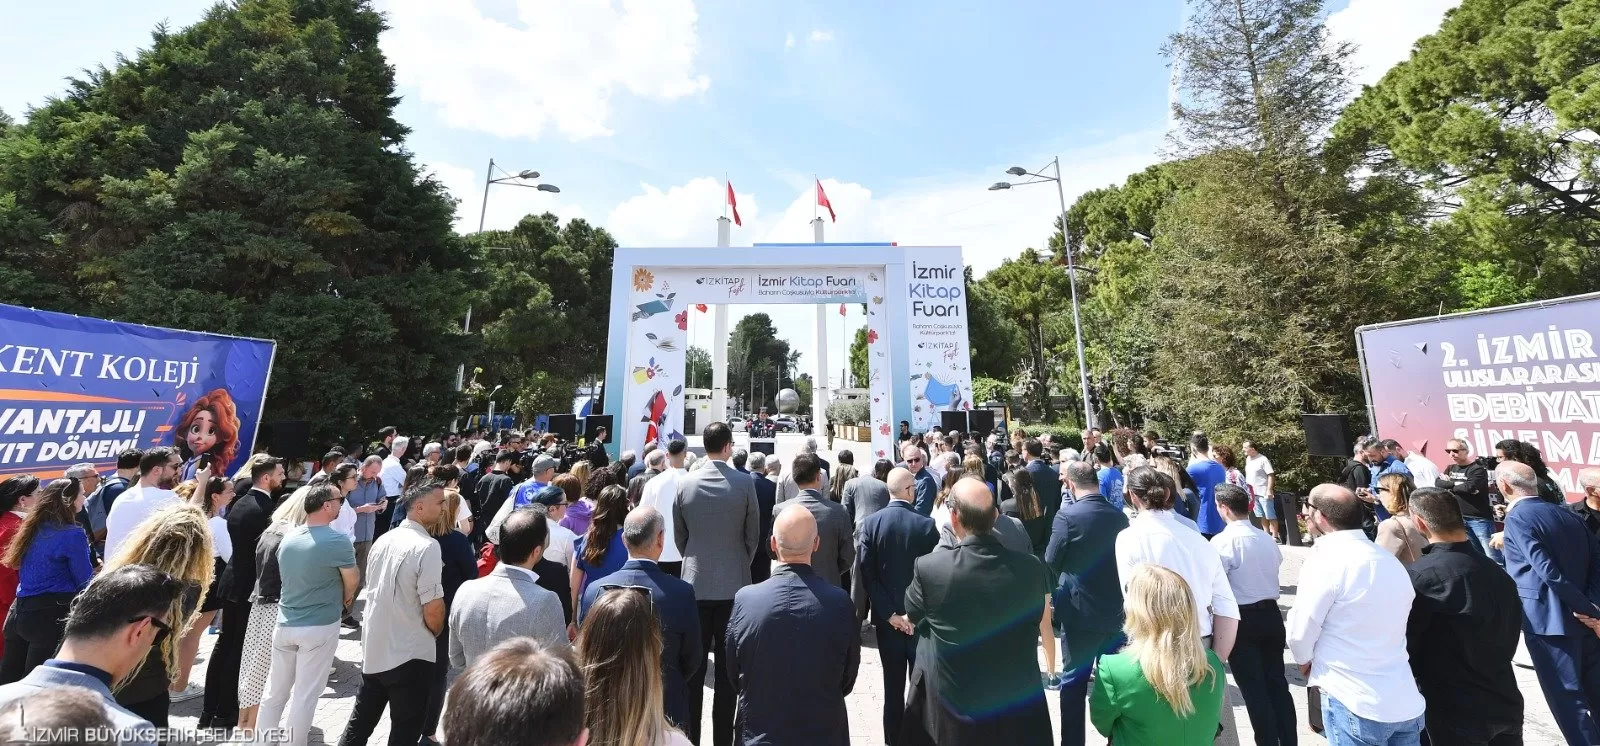 İzmir Büyükşehir Belediyesi'nin ev sahipliğinde İZFAŞ ve SNS Fuarcılık işbirliği ile düzenlenen İzkitapfest - İzmir Kitap Fuarı 19 Nisan'da Kültürpark'ta açıldı. 